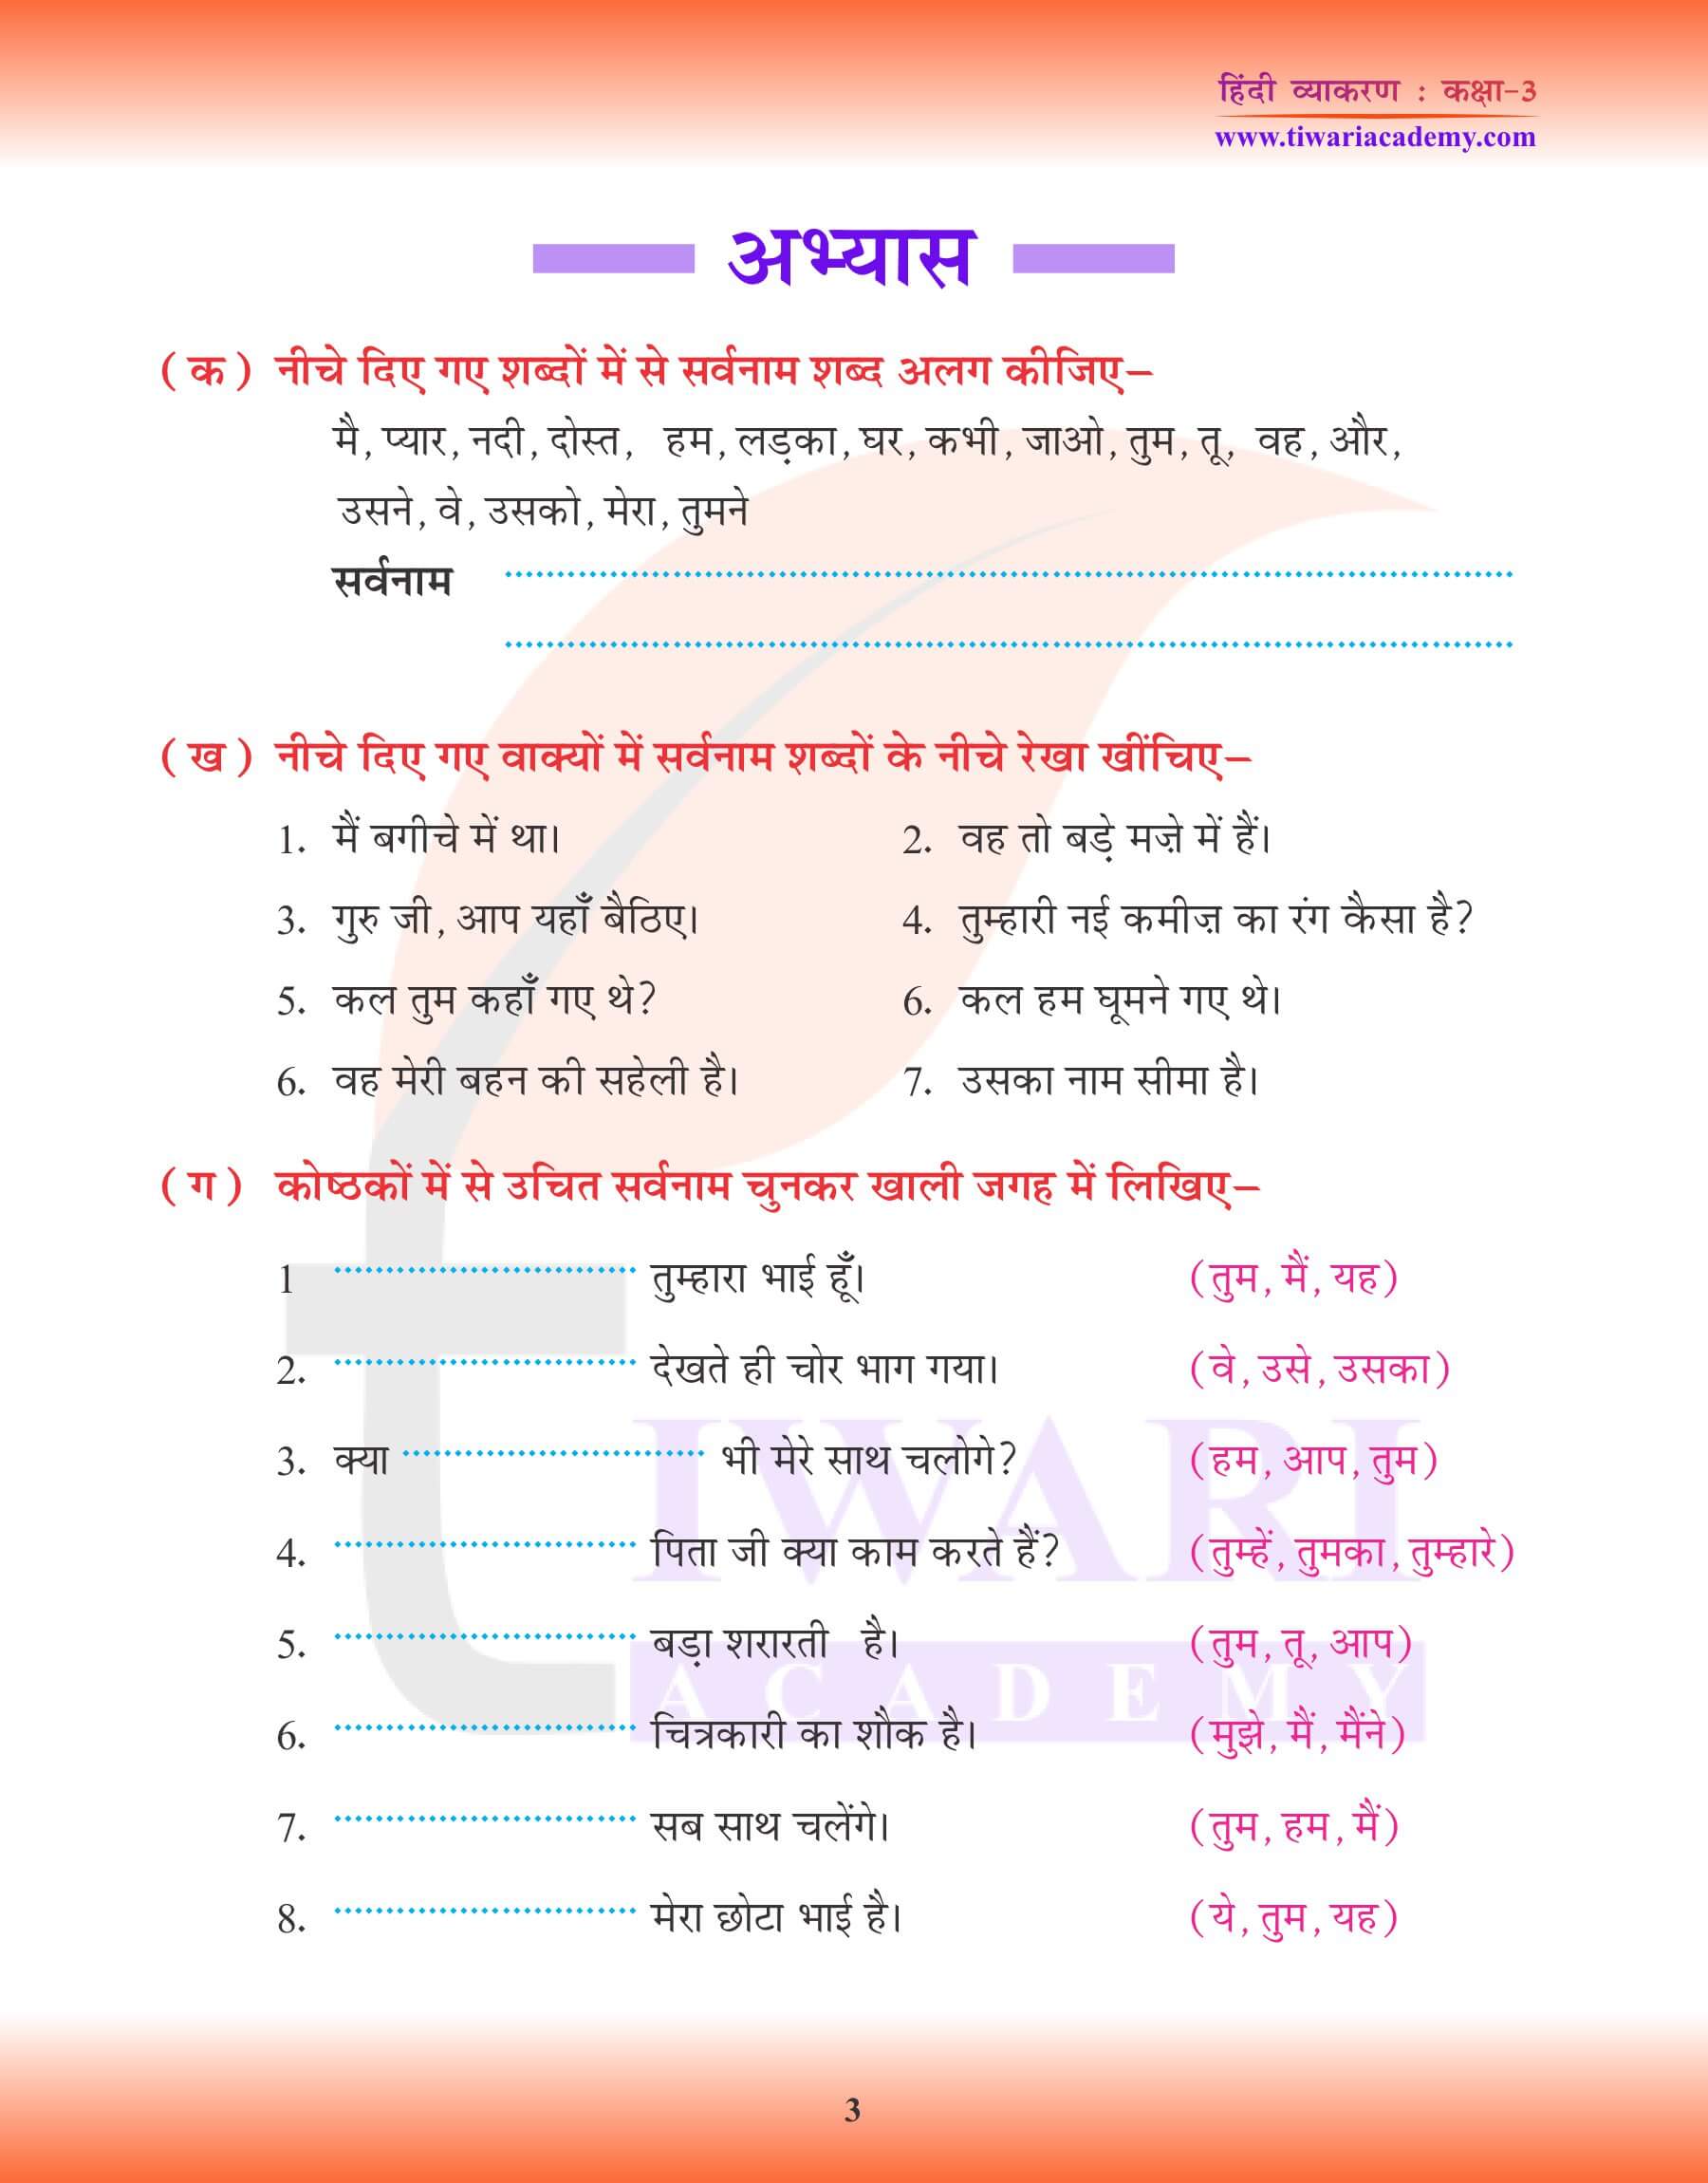 कक्षा 3 हिंदी व्याकरण में सर्वनाम